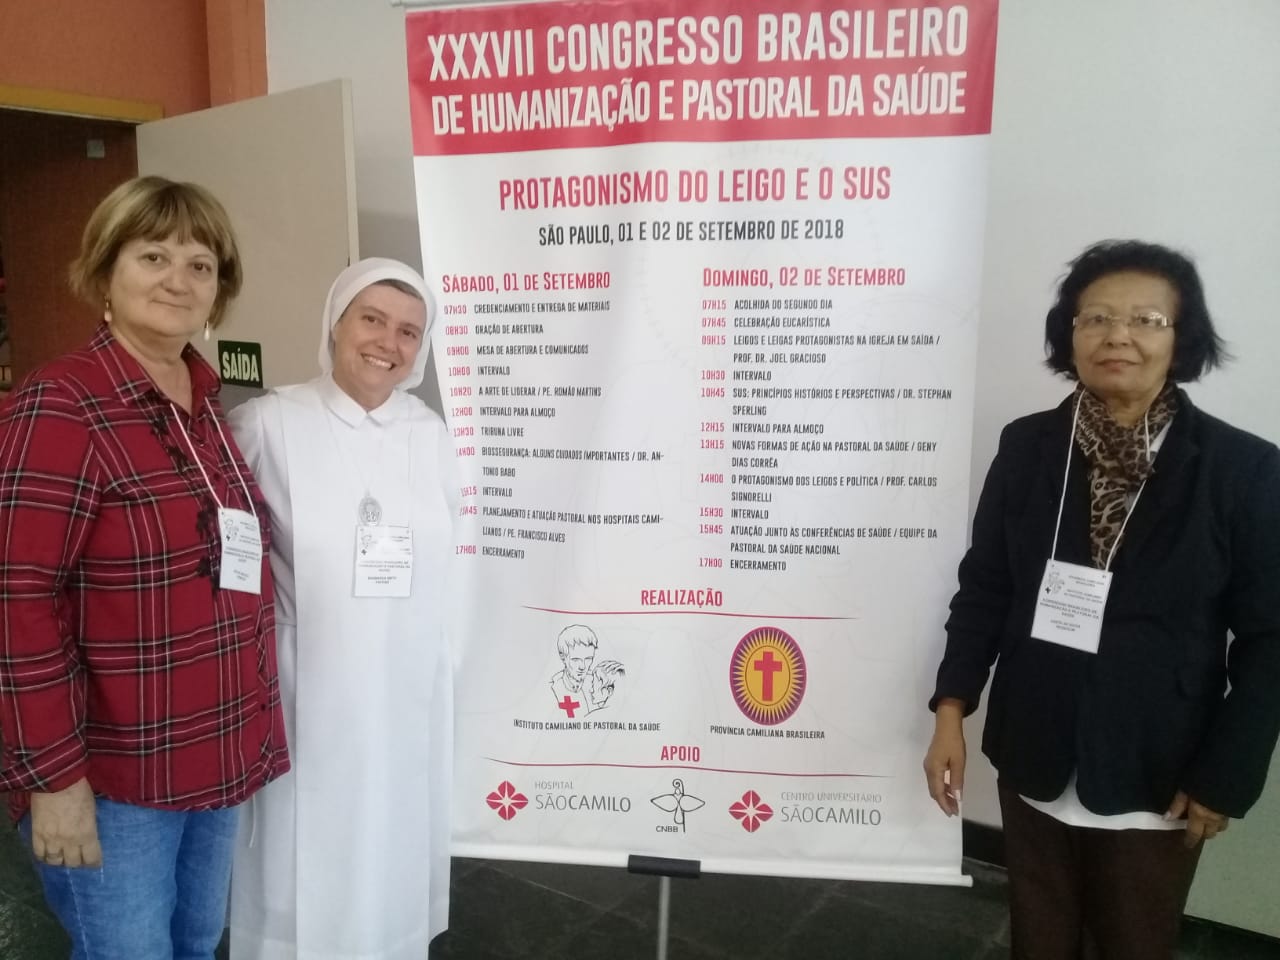 Foto | Representantes da Pastoral da Saúde participam de Congresso em São Paulo